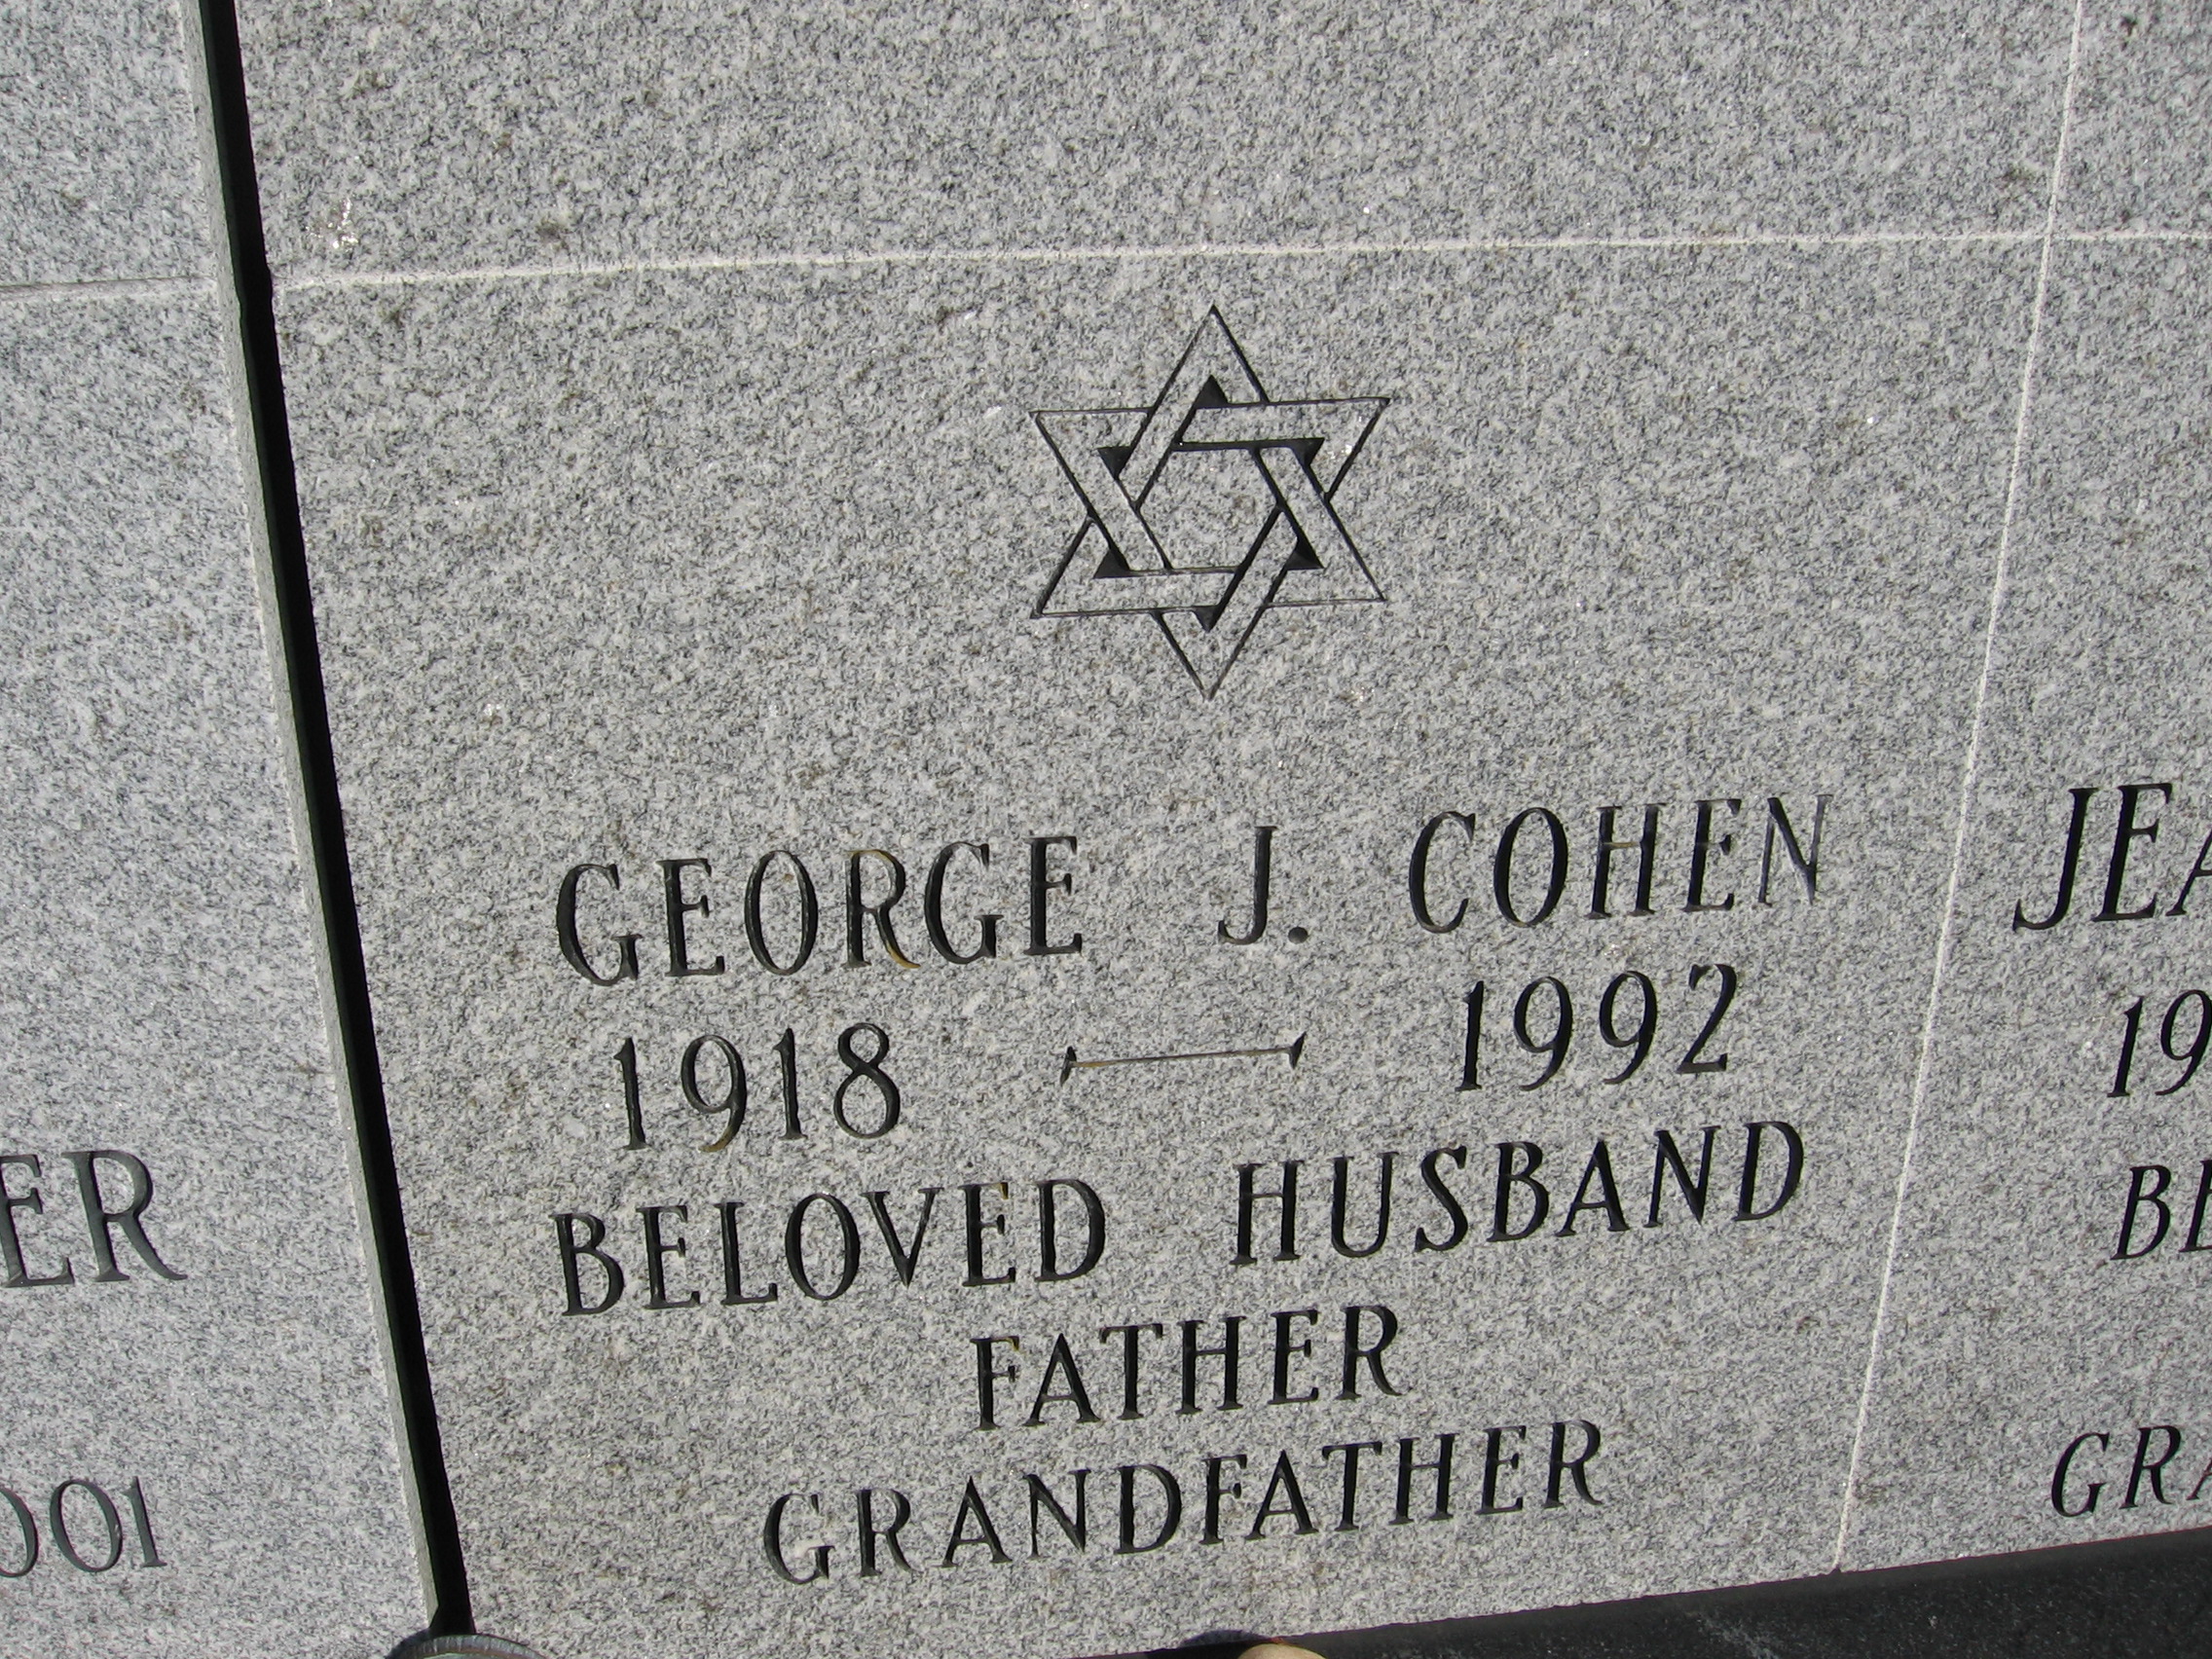 George J Cohen